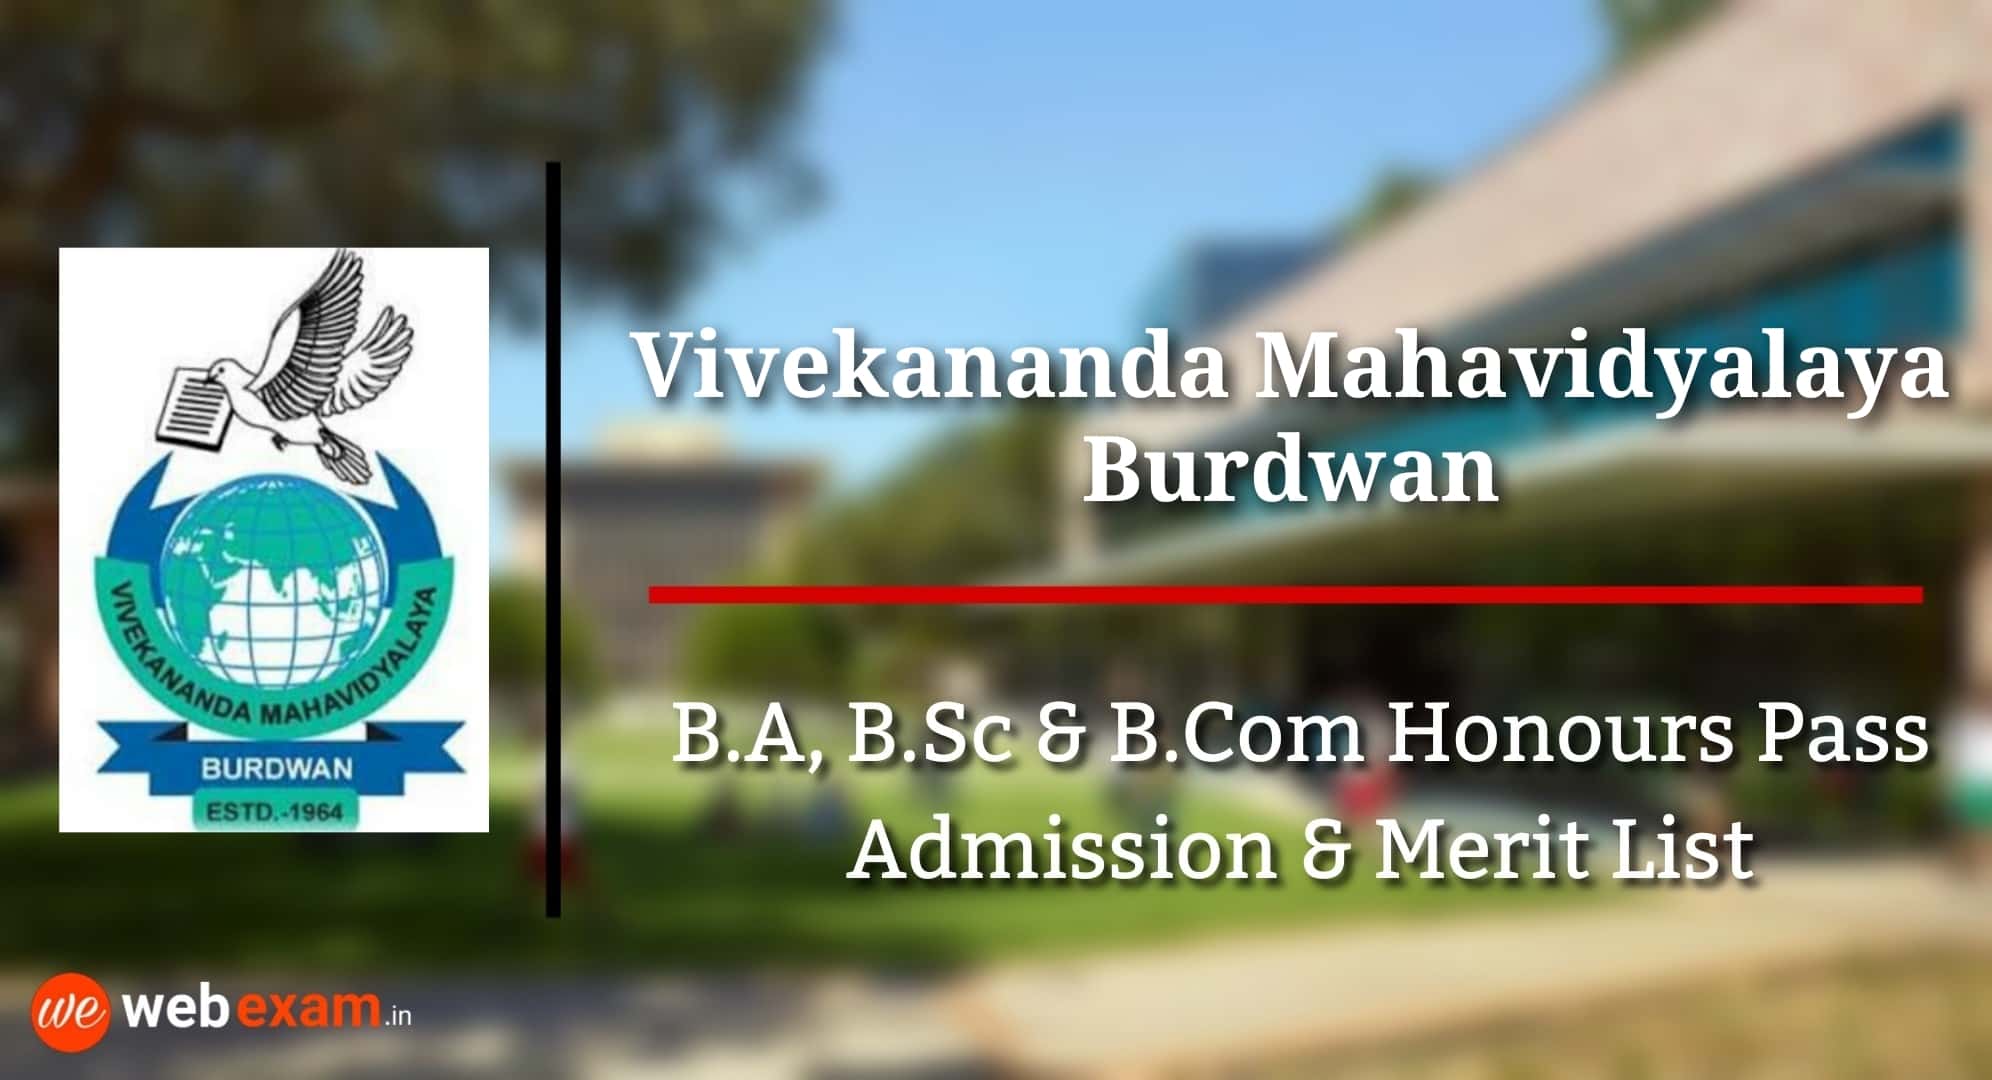 Vivekananda Mahavidyalaya Admission Burdwan